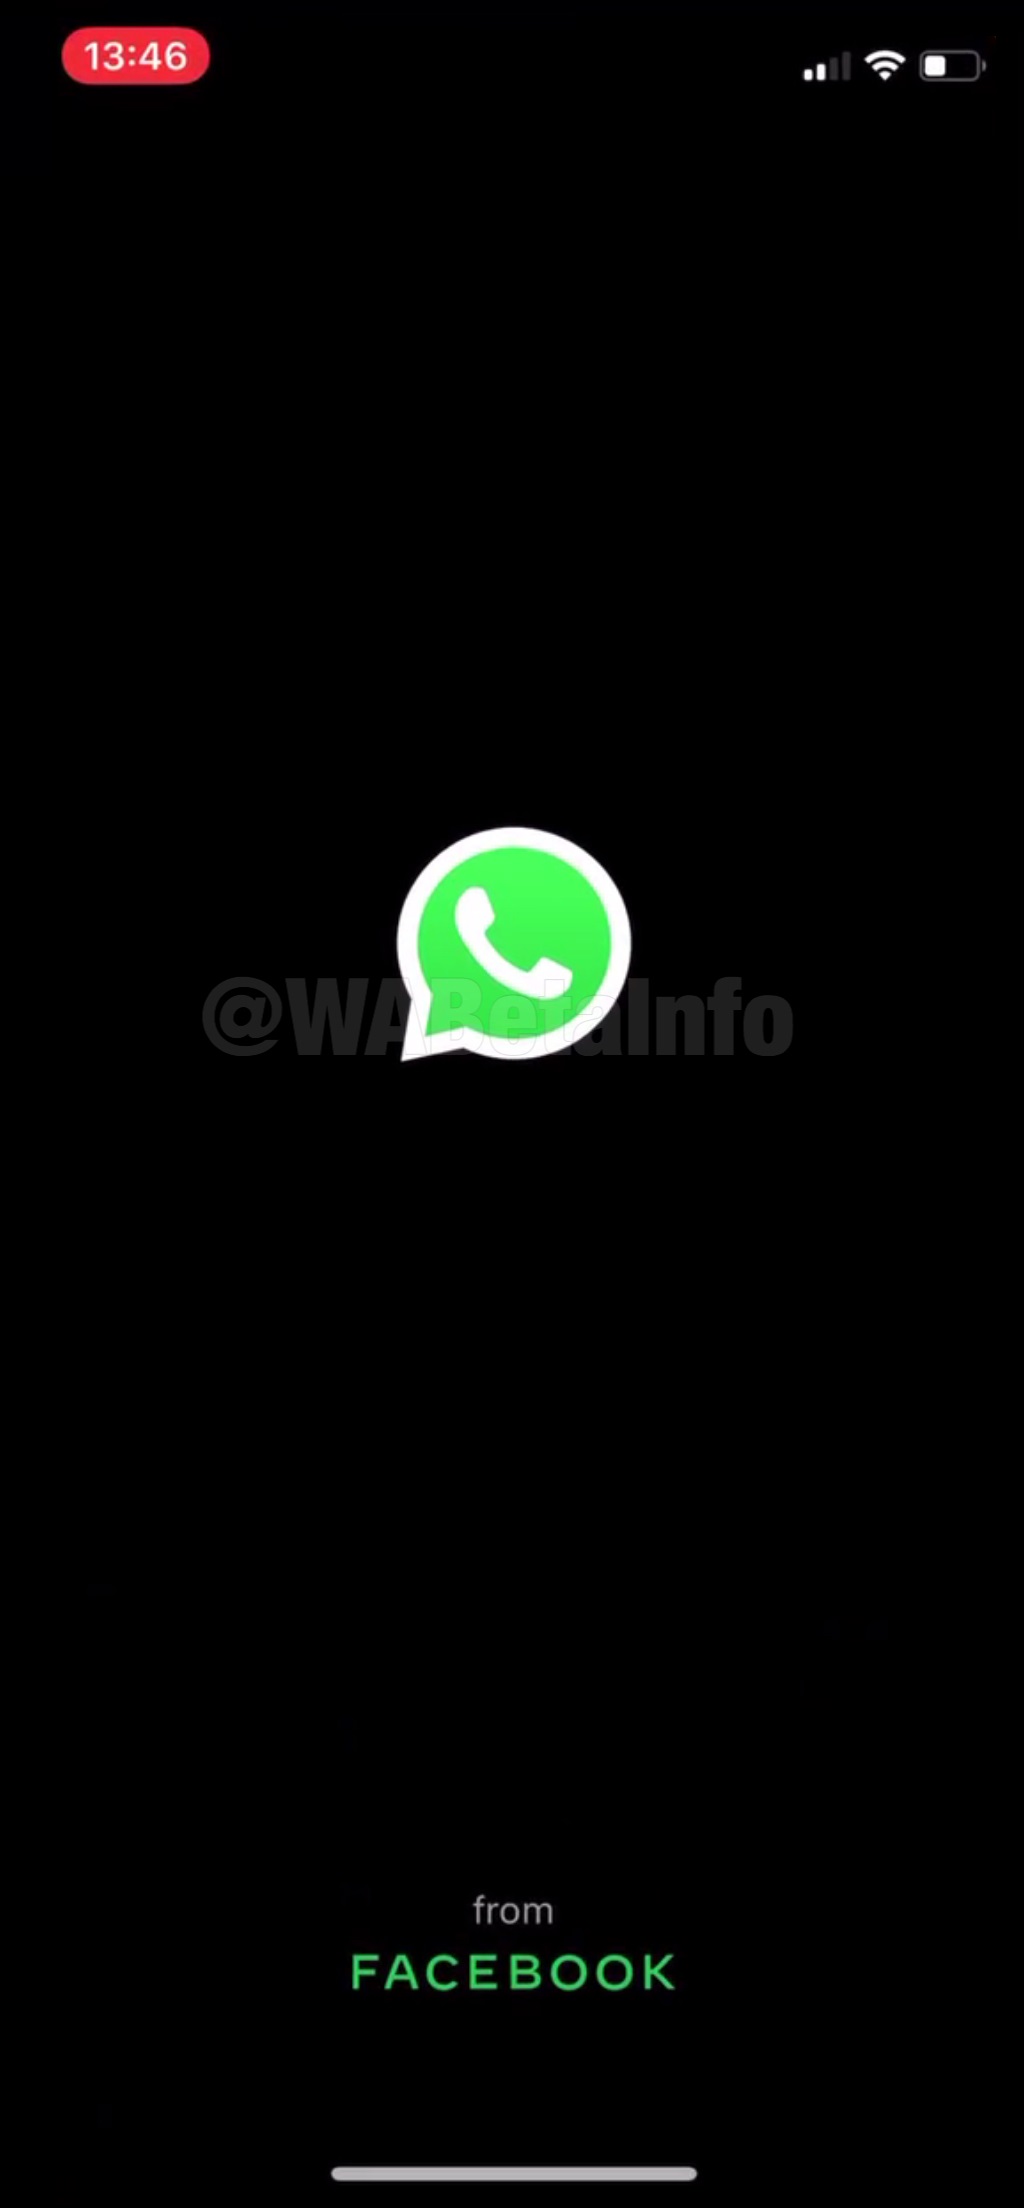 WhatsApp beta untuk iOS 2.20.20.17: apa yang baru? 2